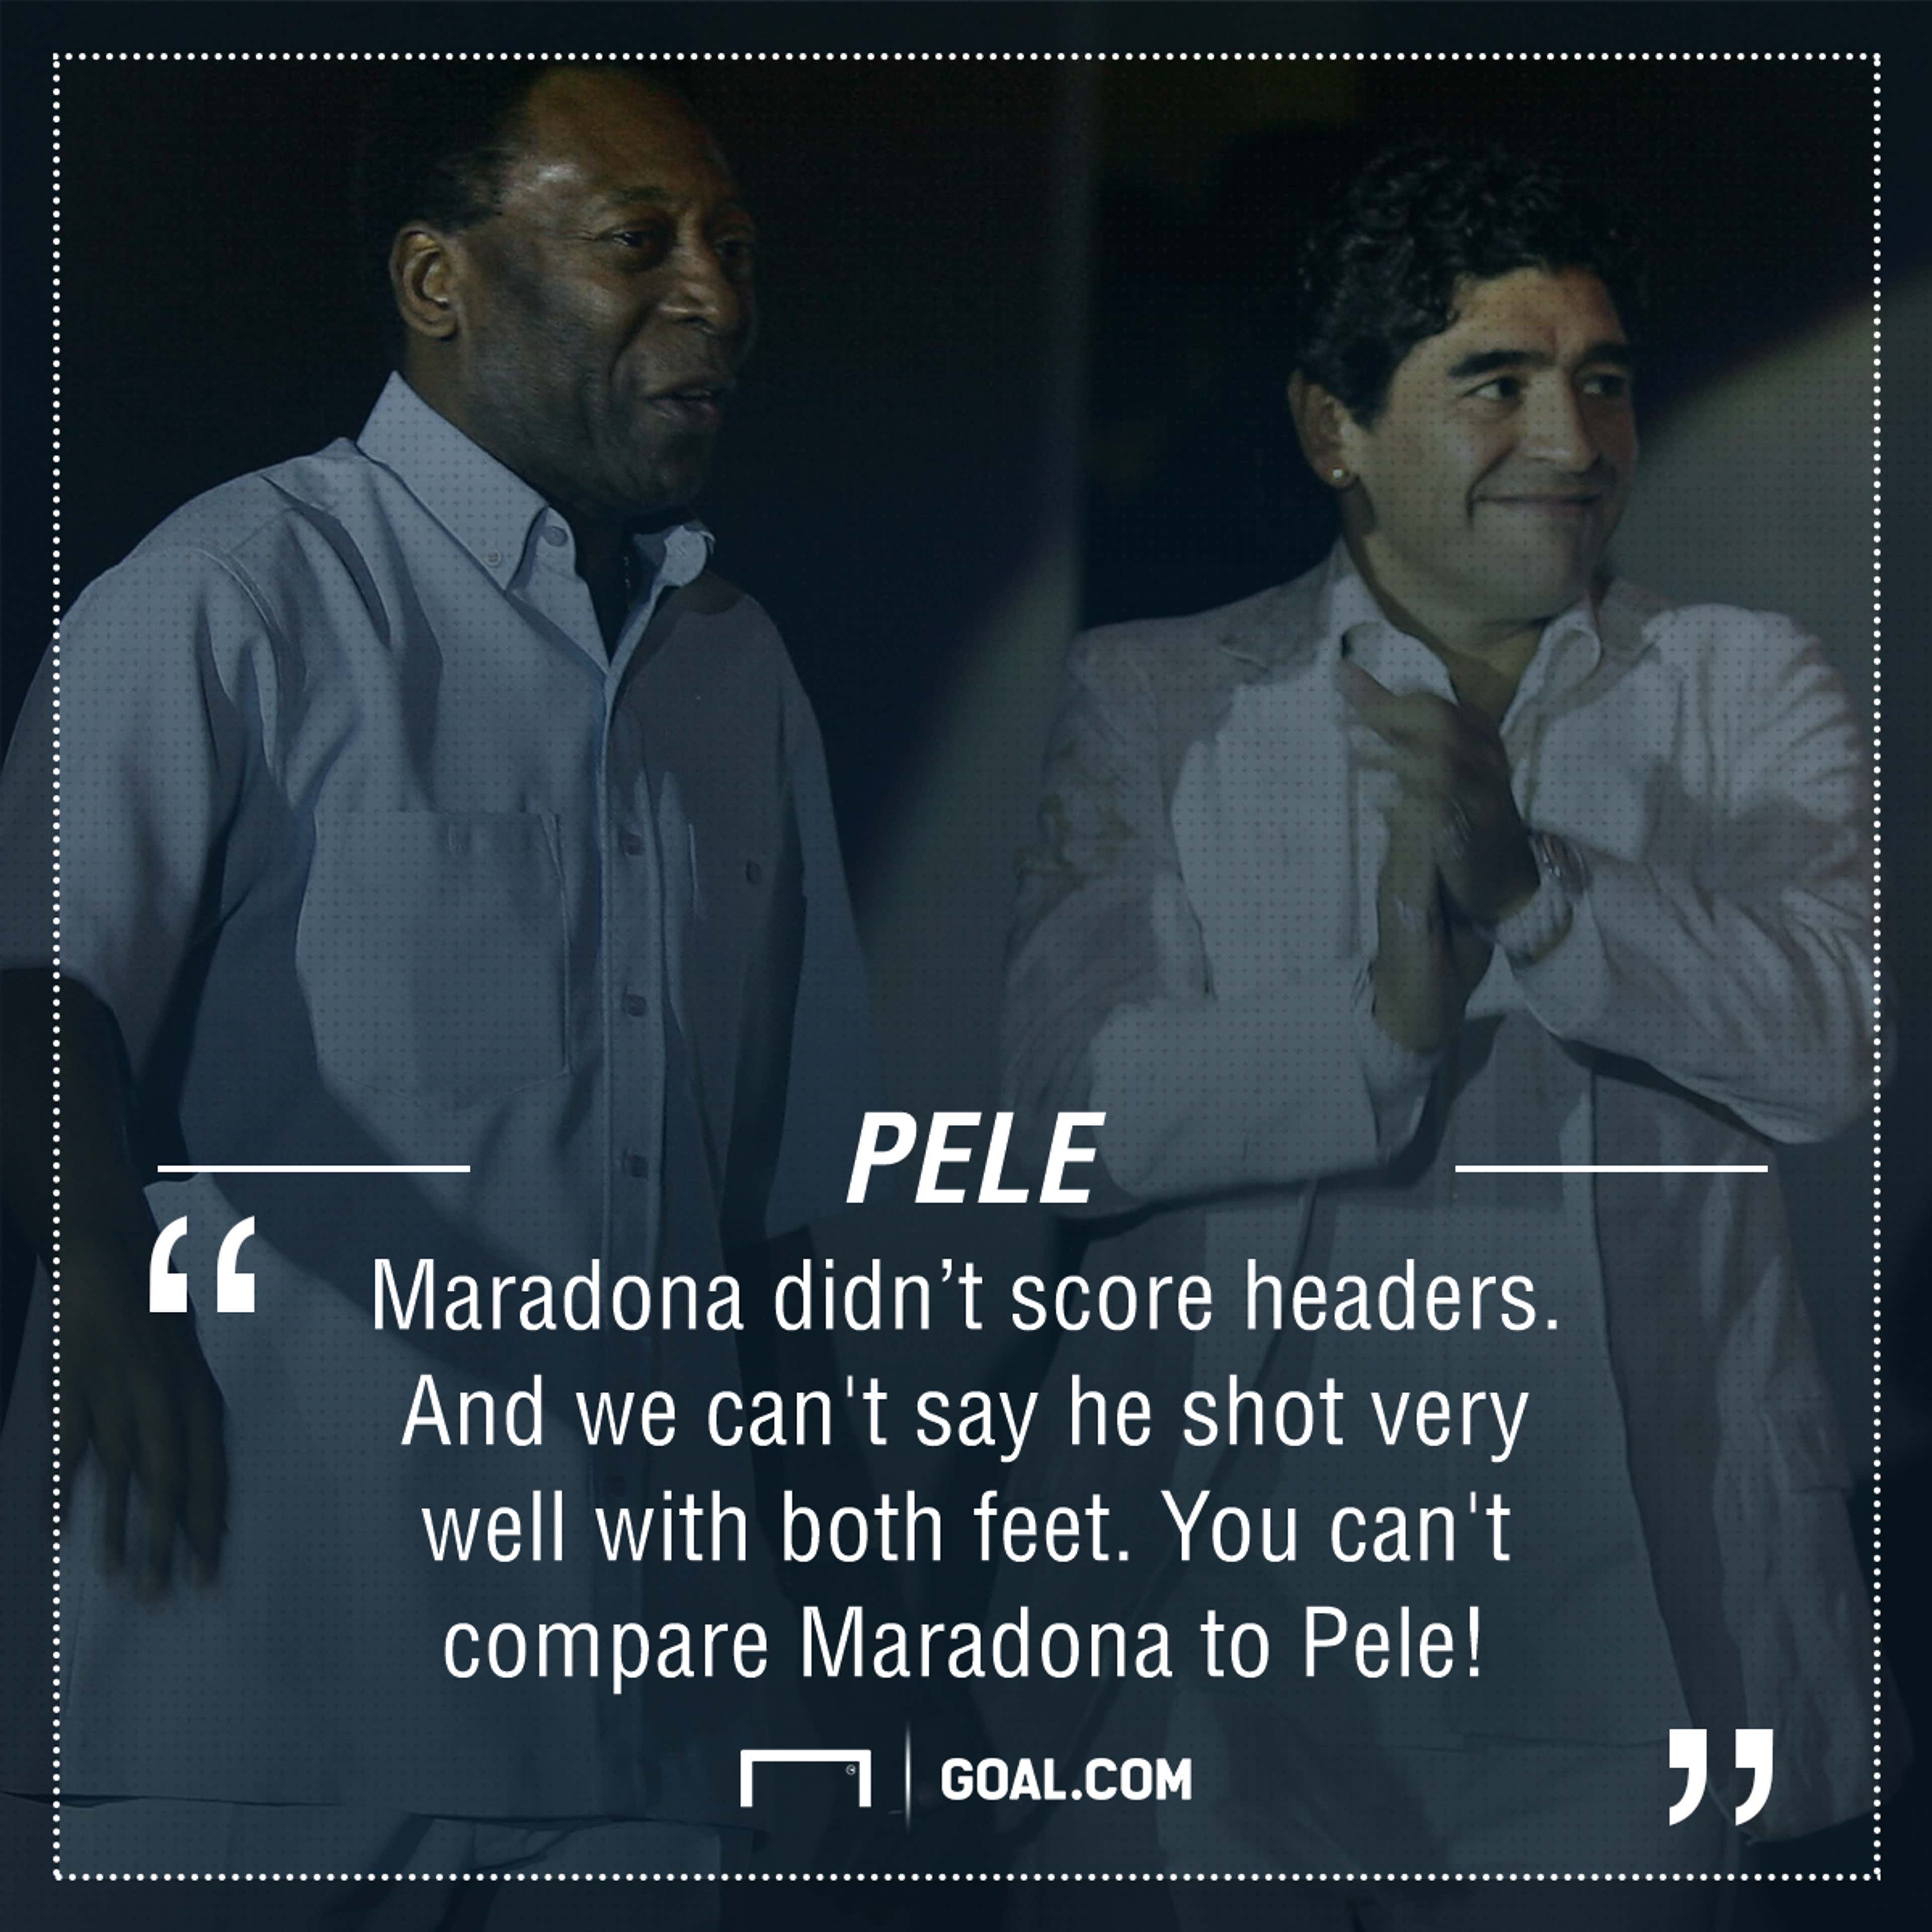 Pele Maradona quote